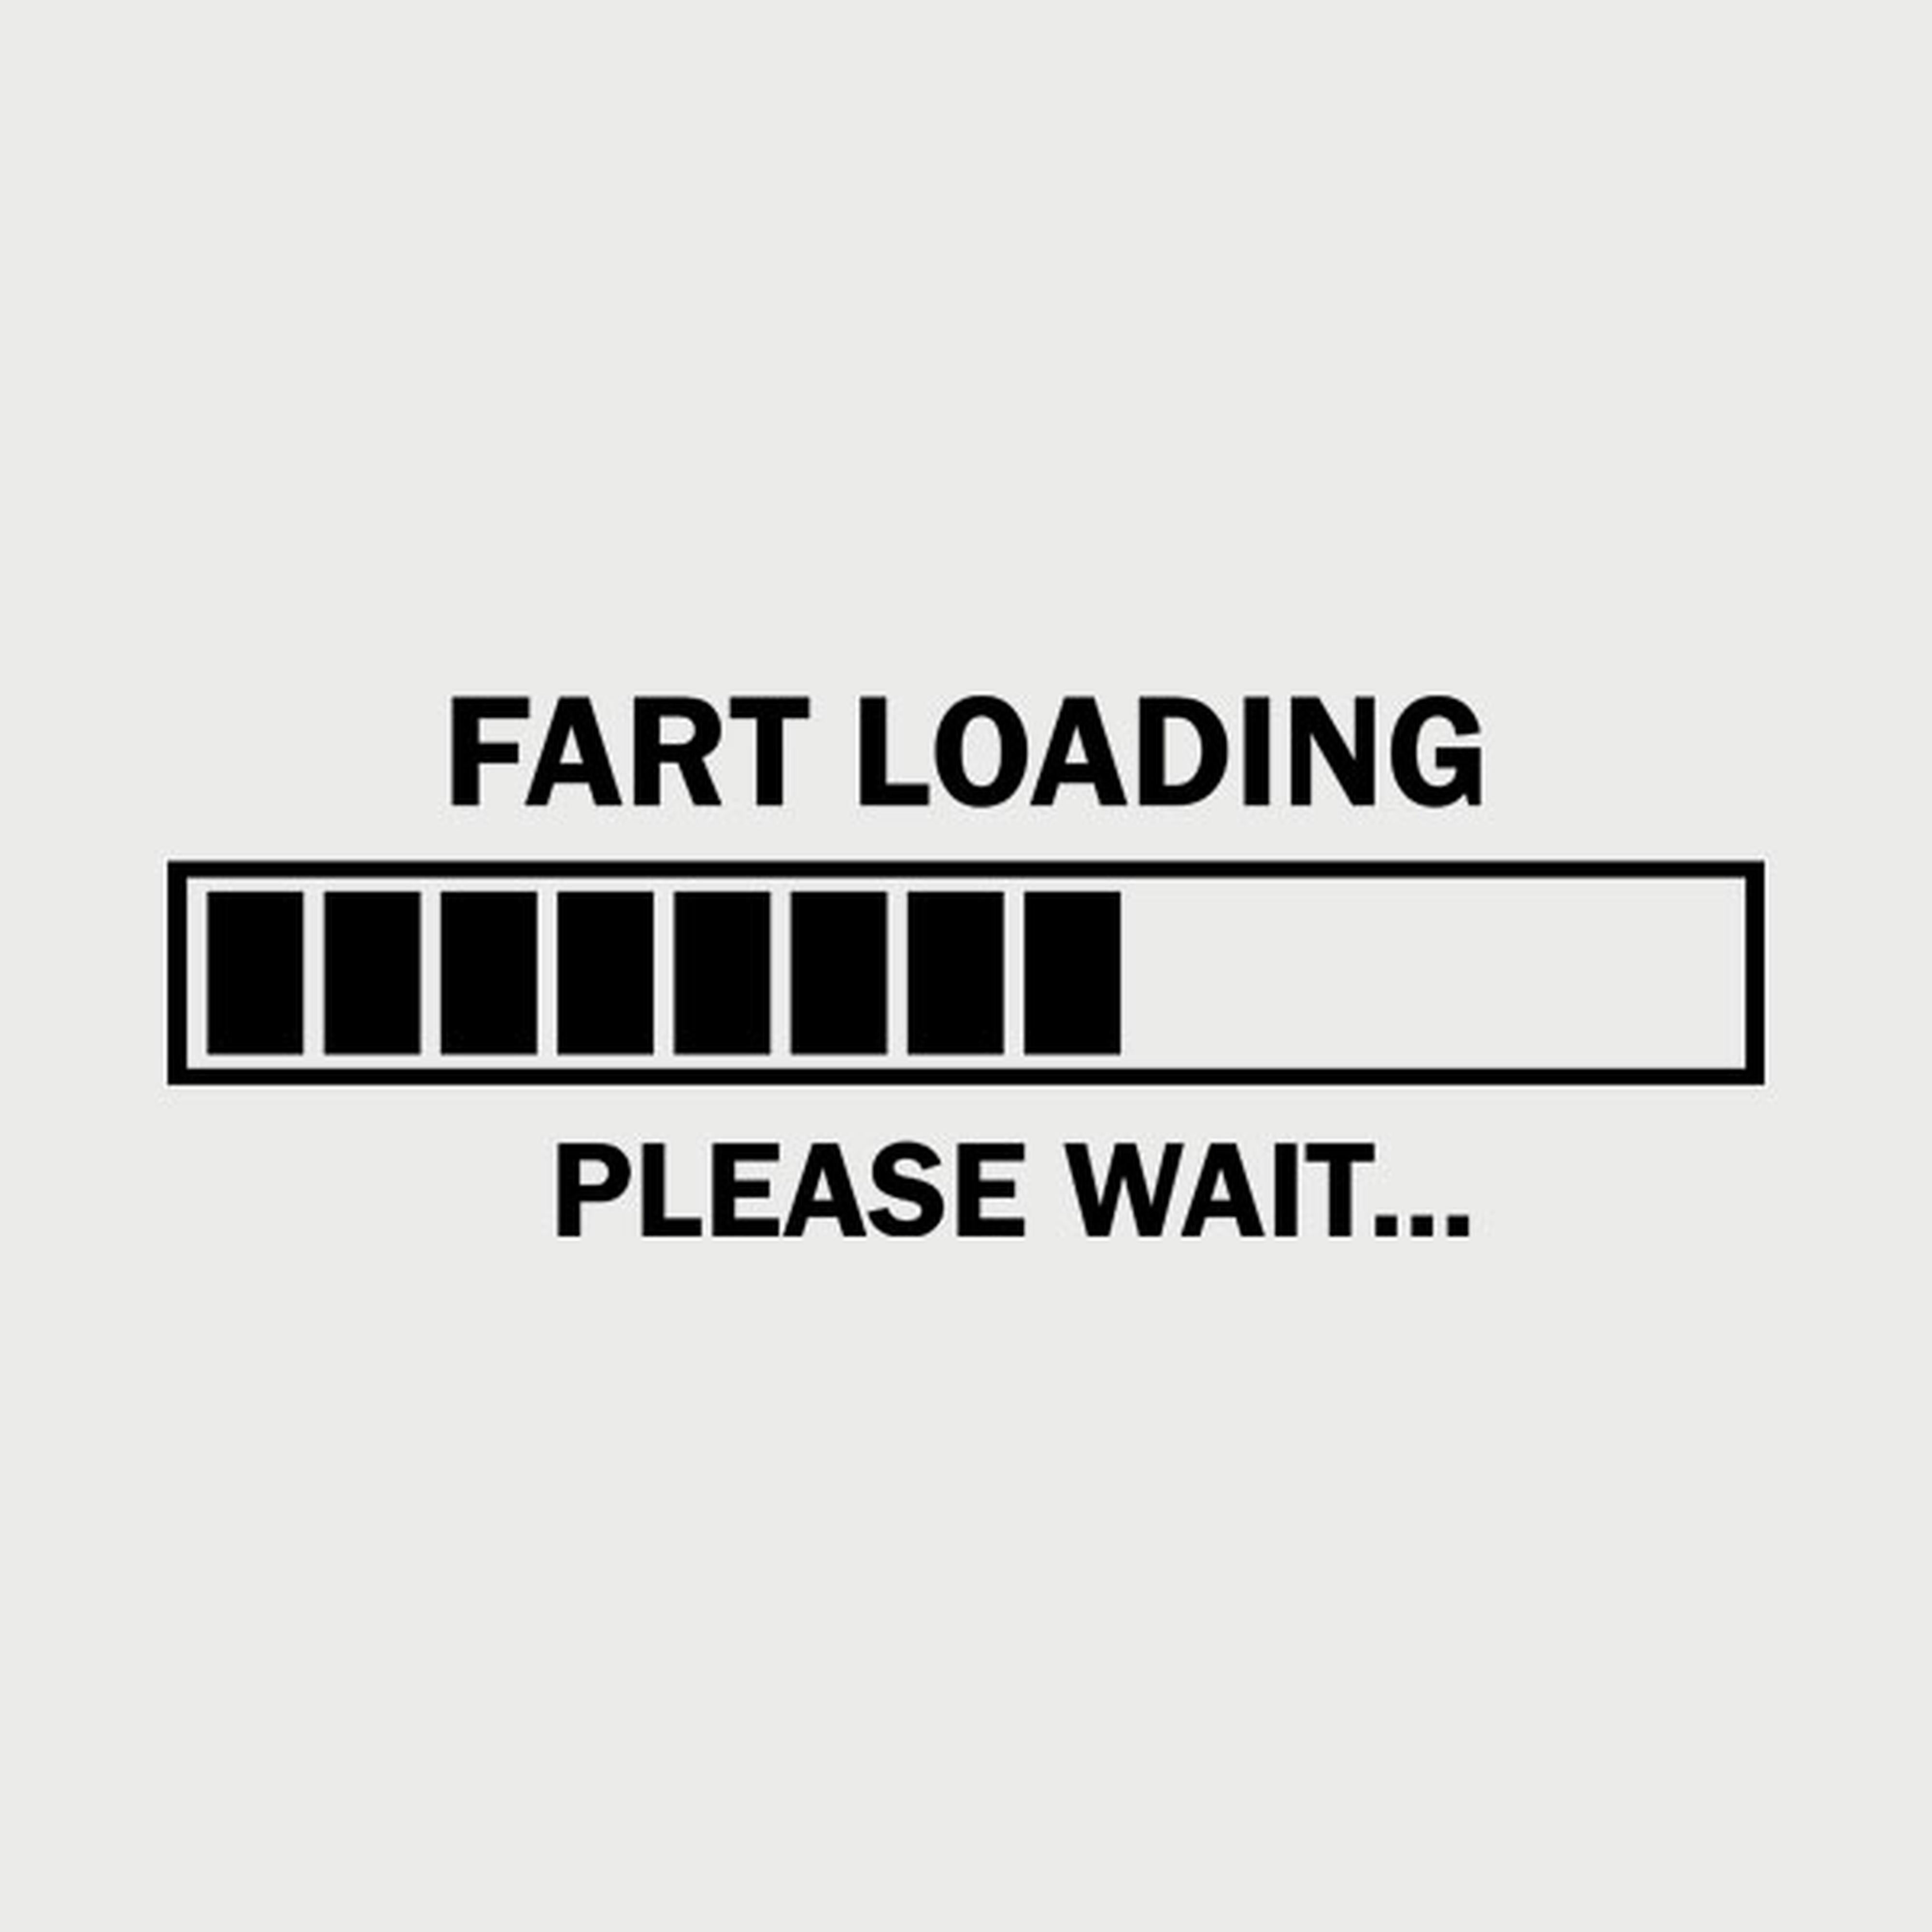 Fart loading. Please wait. - T-shirt